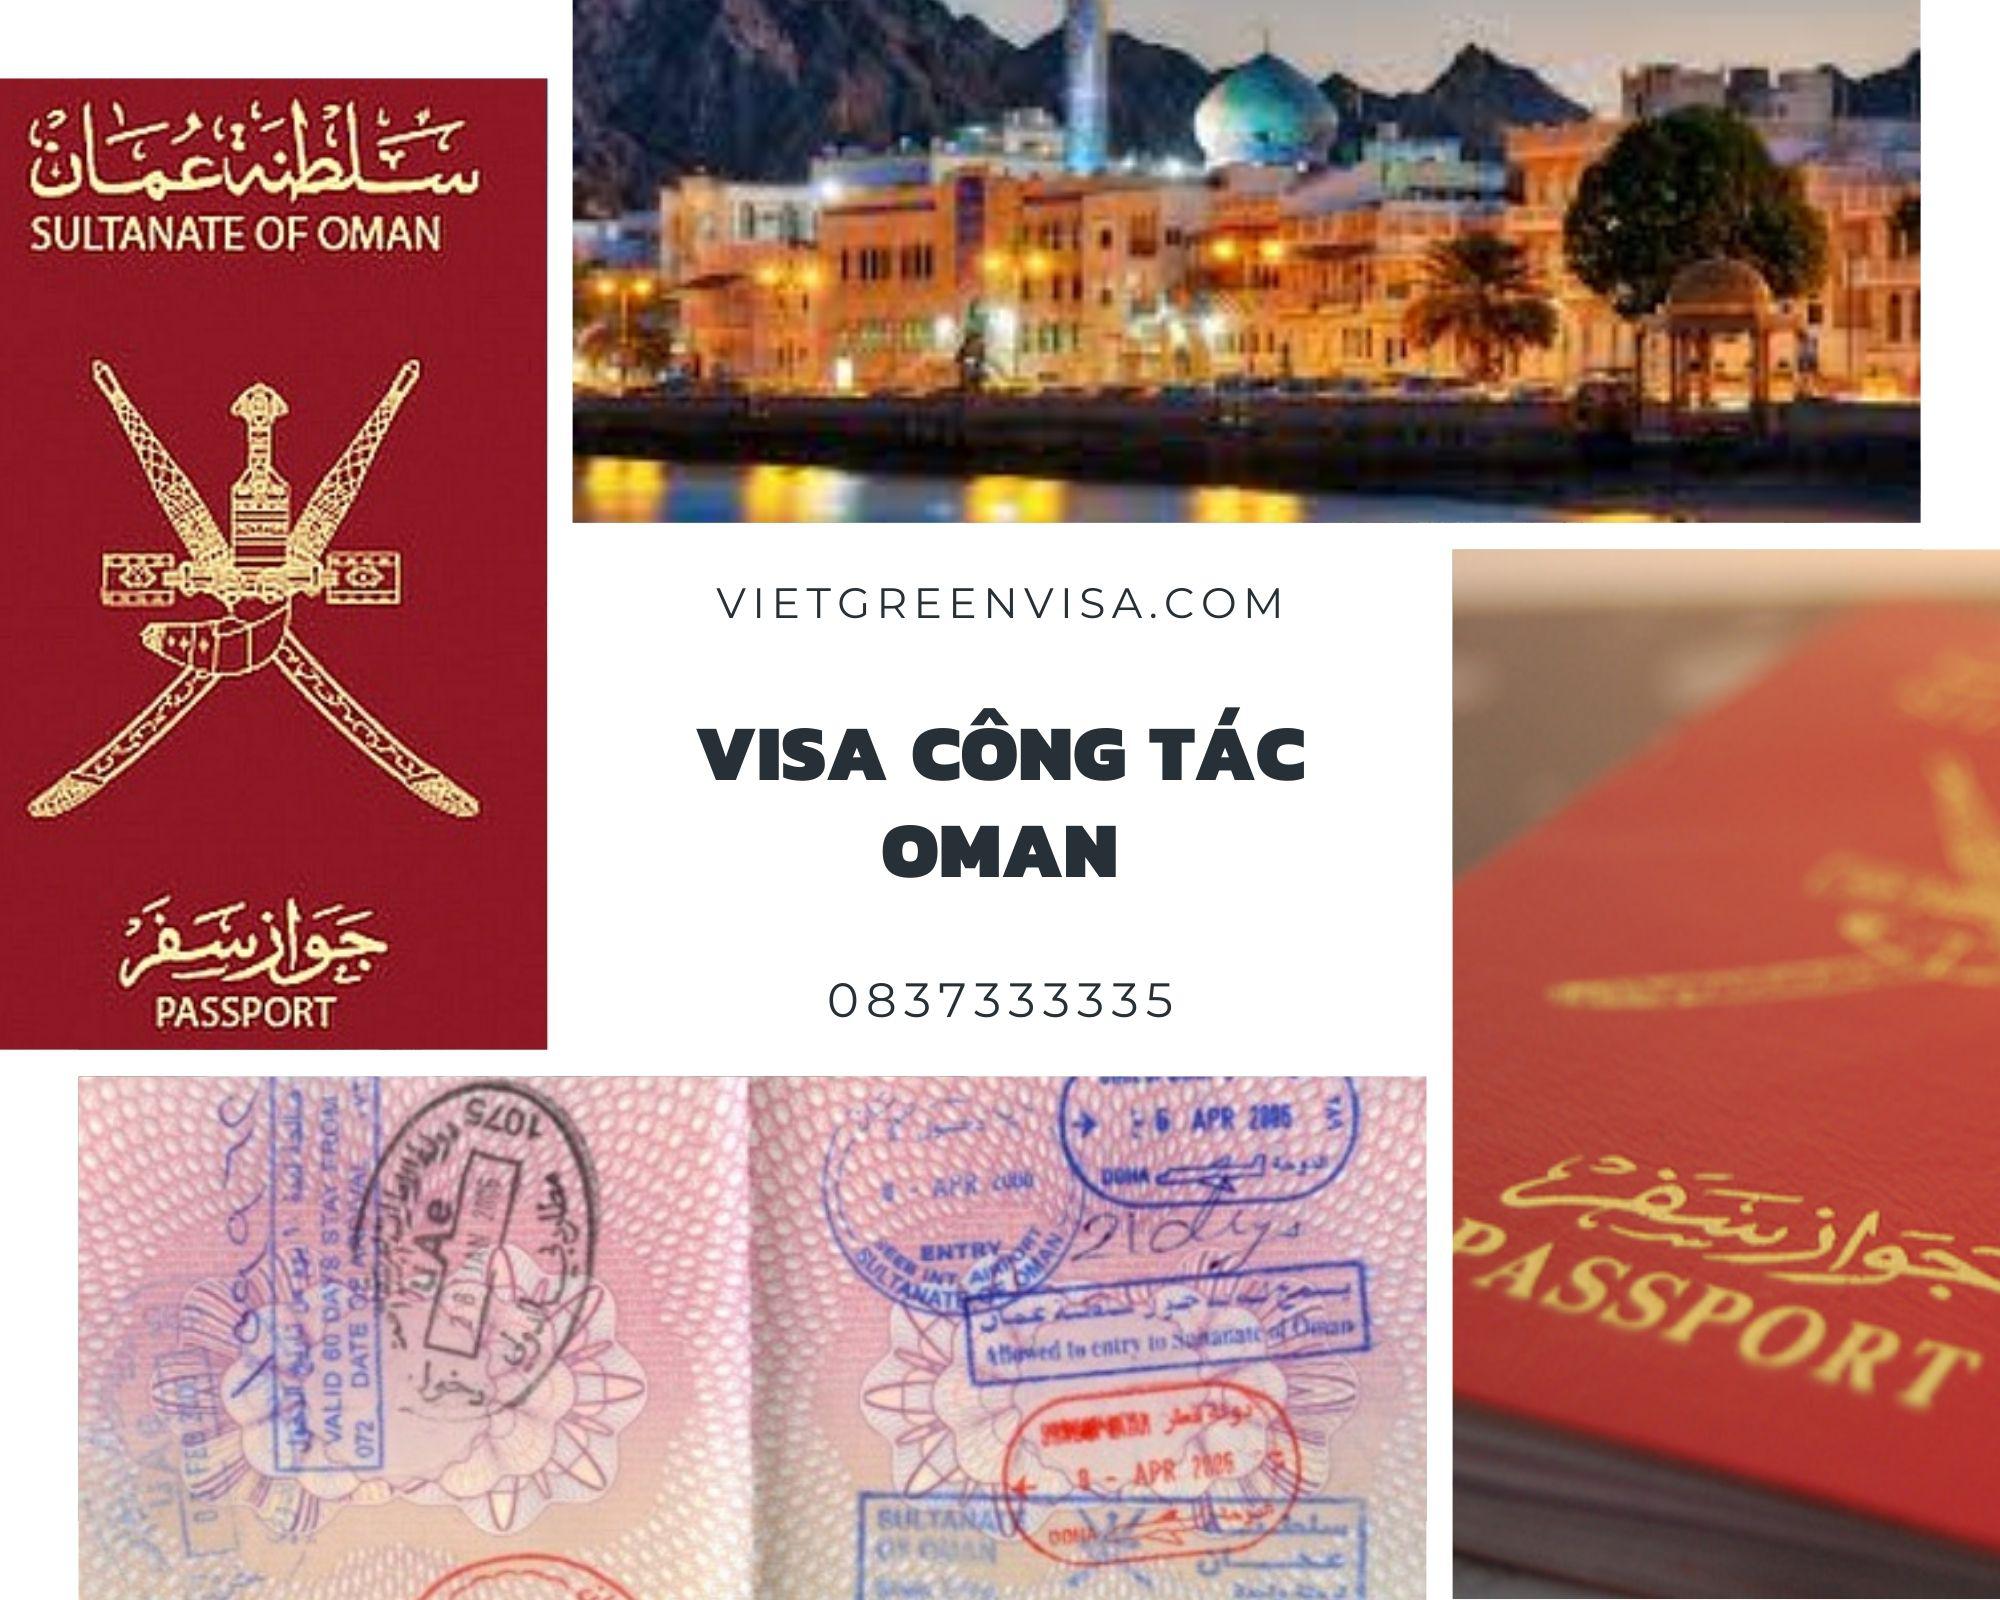 Dịch vụ visa Oman công tác cùng Vietgreenvisa